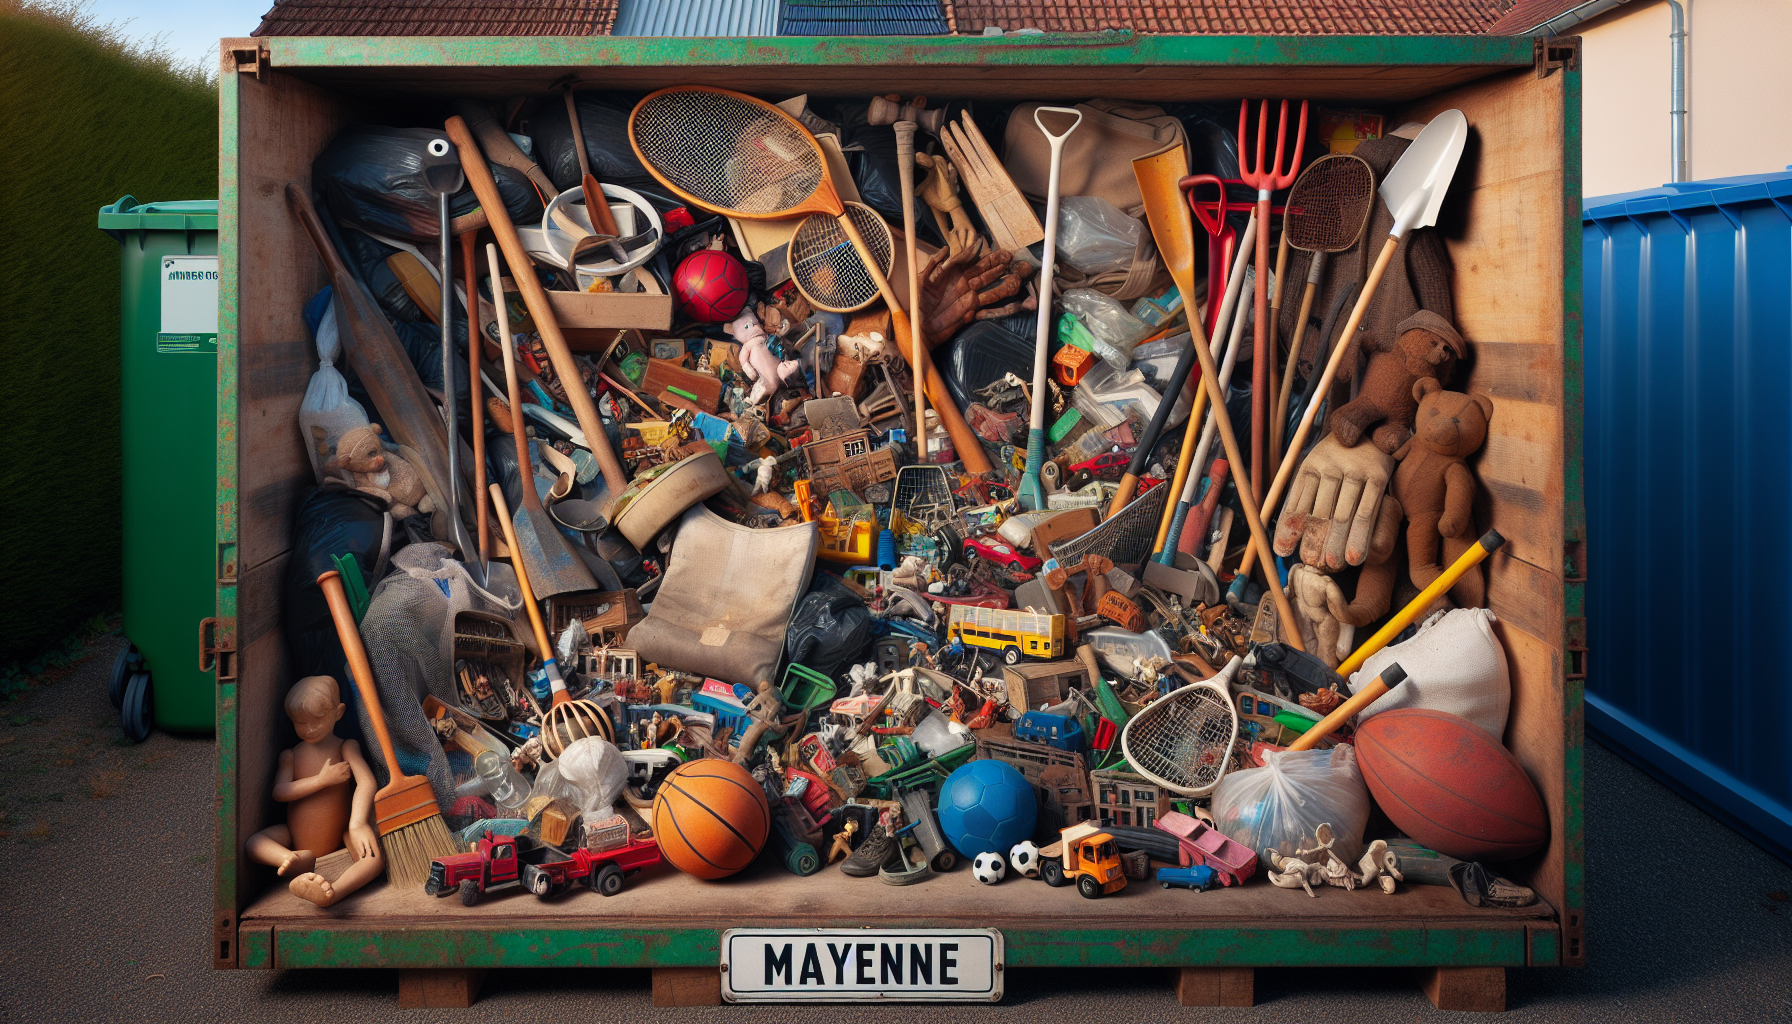 découvrez ce qui se cache parmi les jouets, articles de sport et de jardinage jetés à la déchetterie de mayenne communauté - peut-être y trouverez-vous des trésors inattendus !